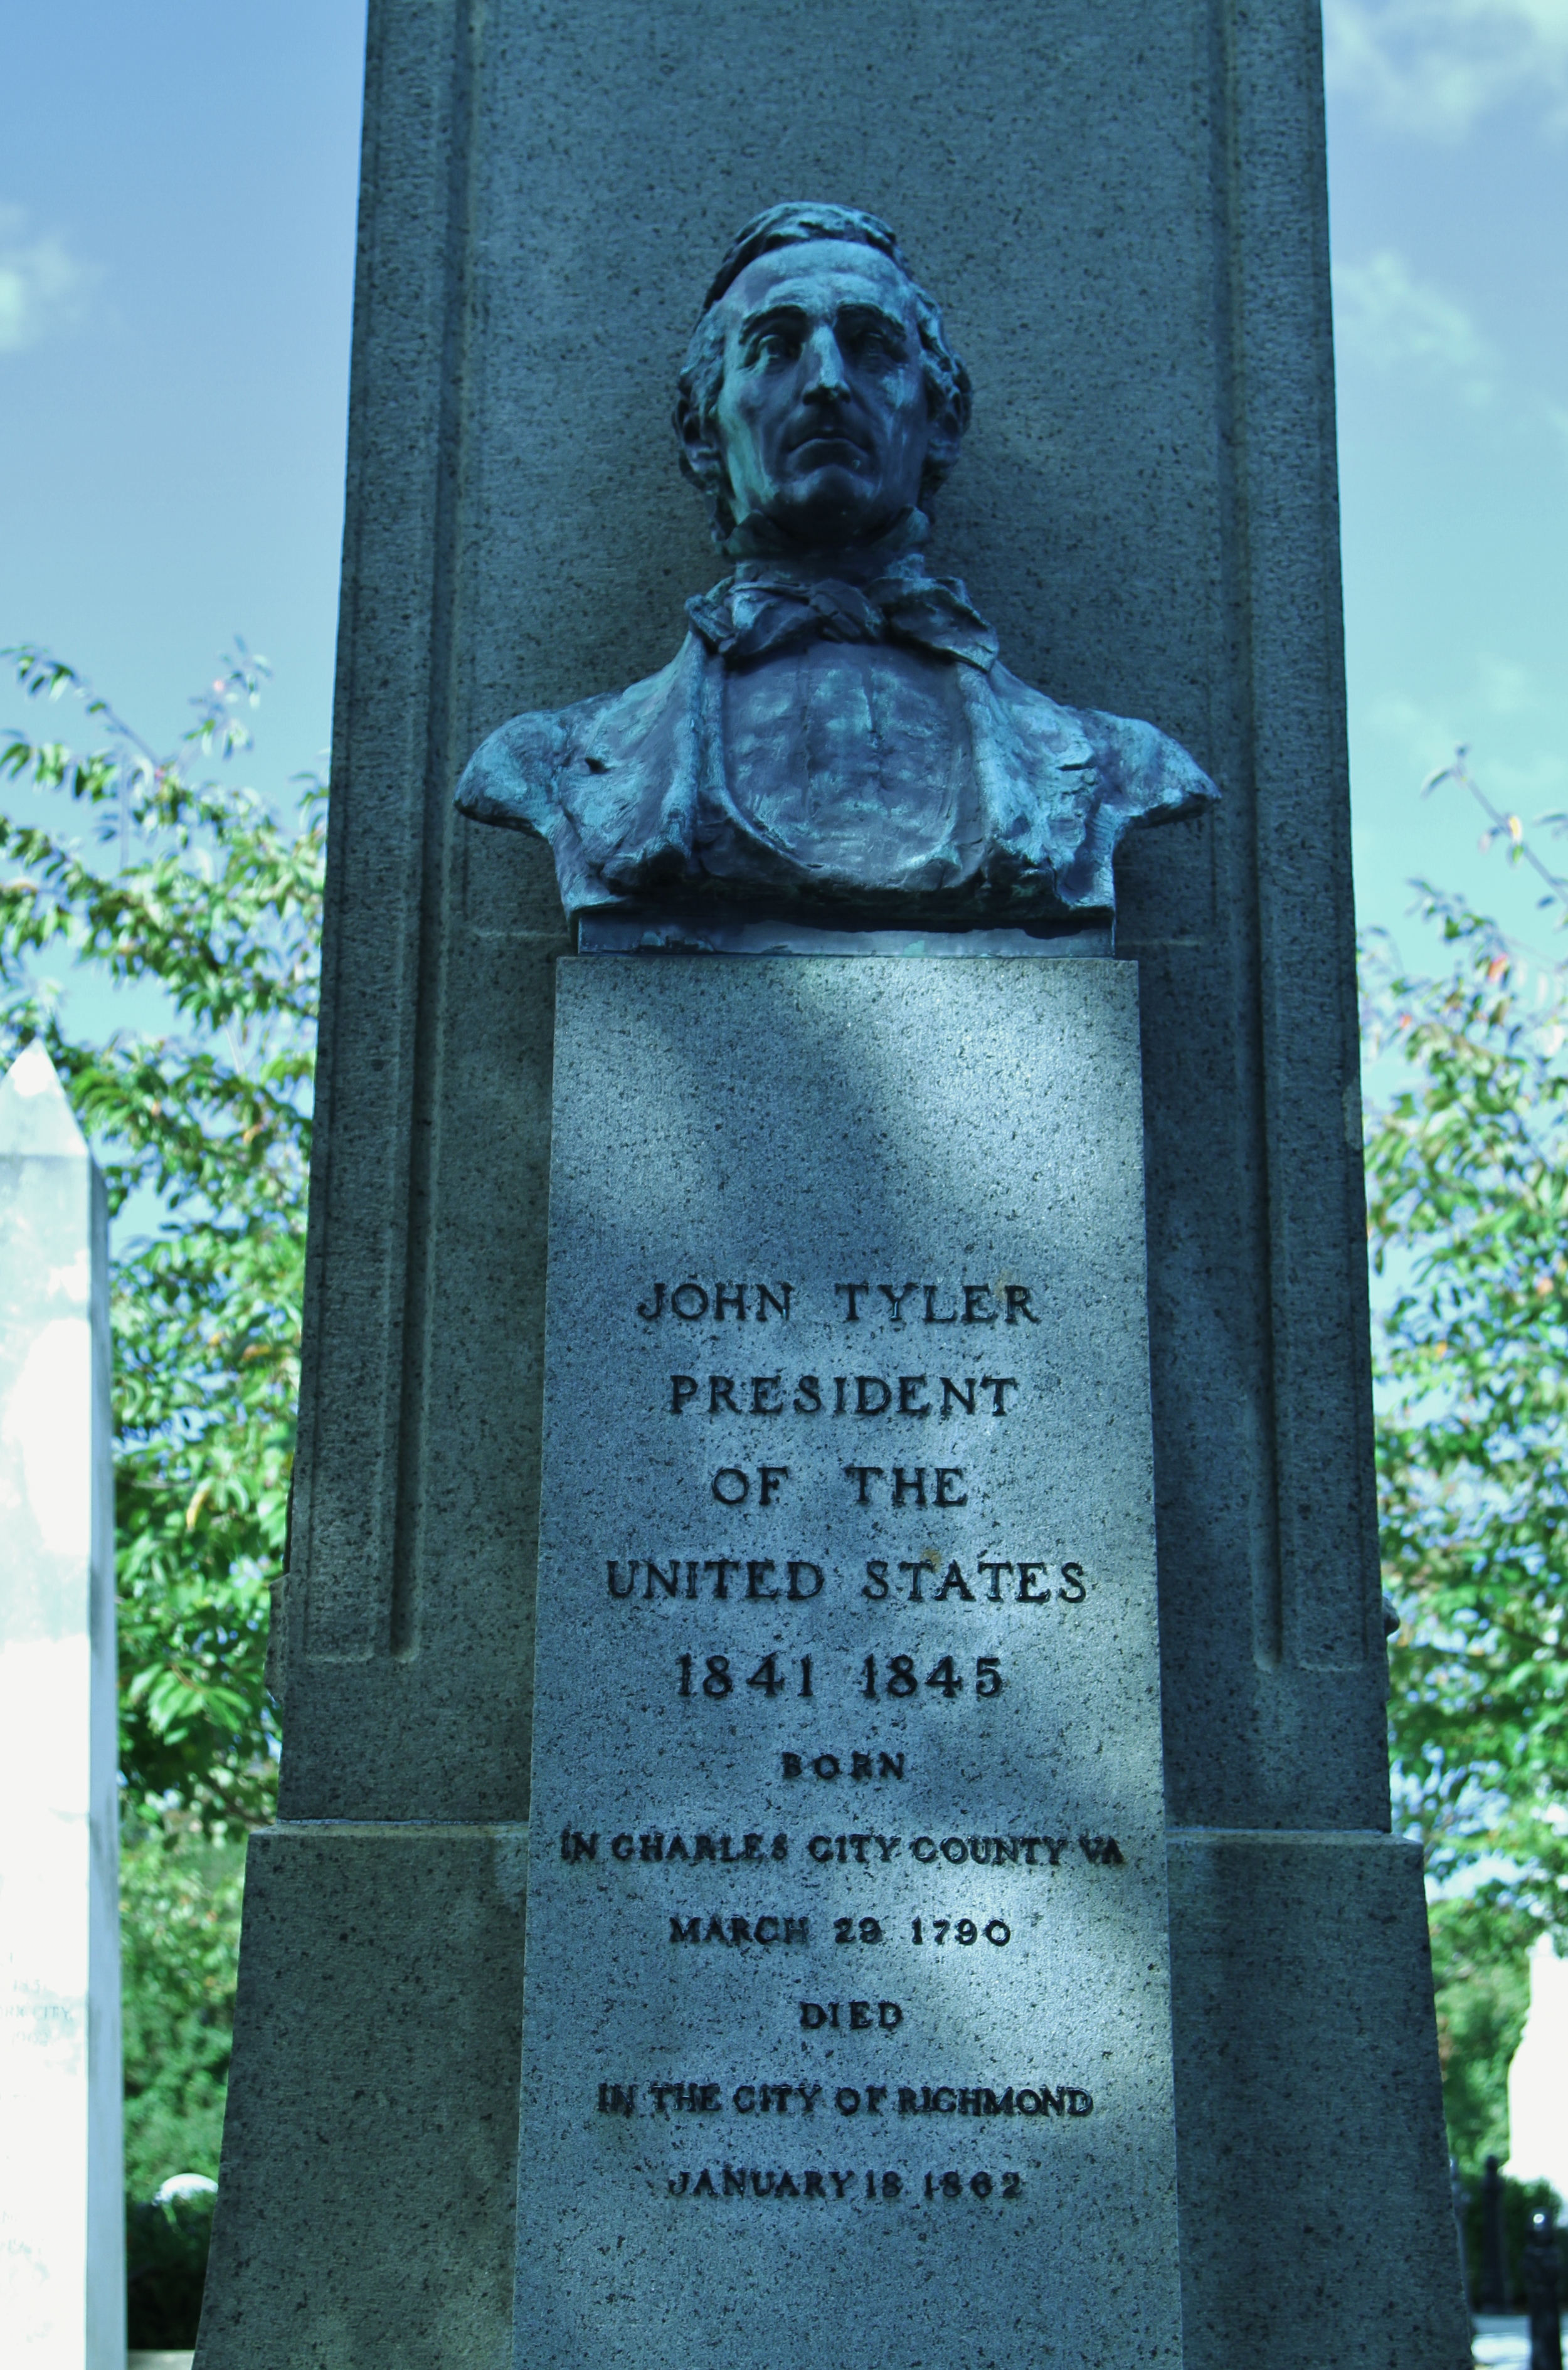  The grave of John Tyler, our tenth president.&nbsp; 